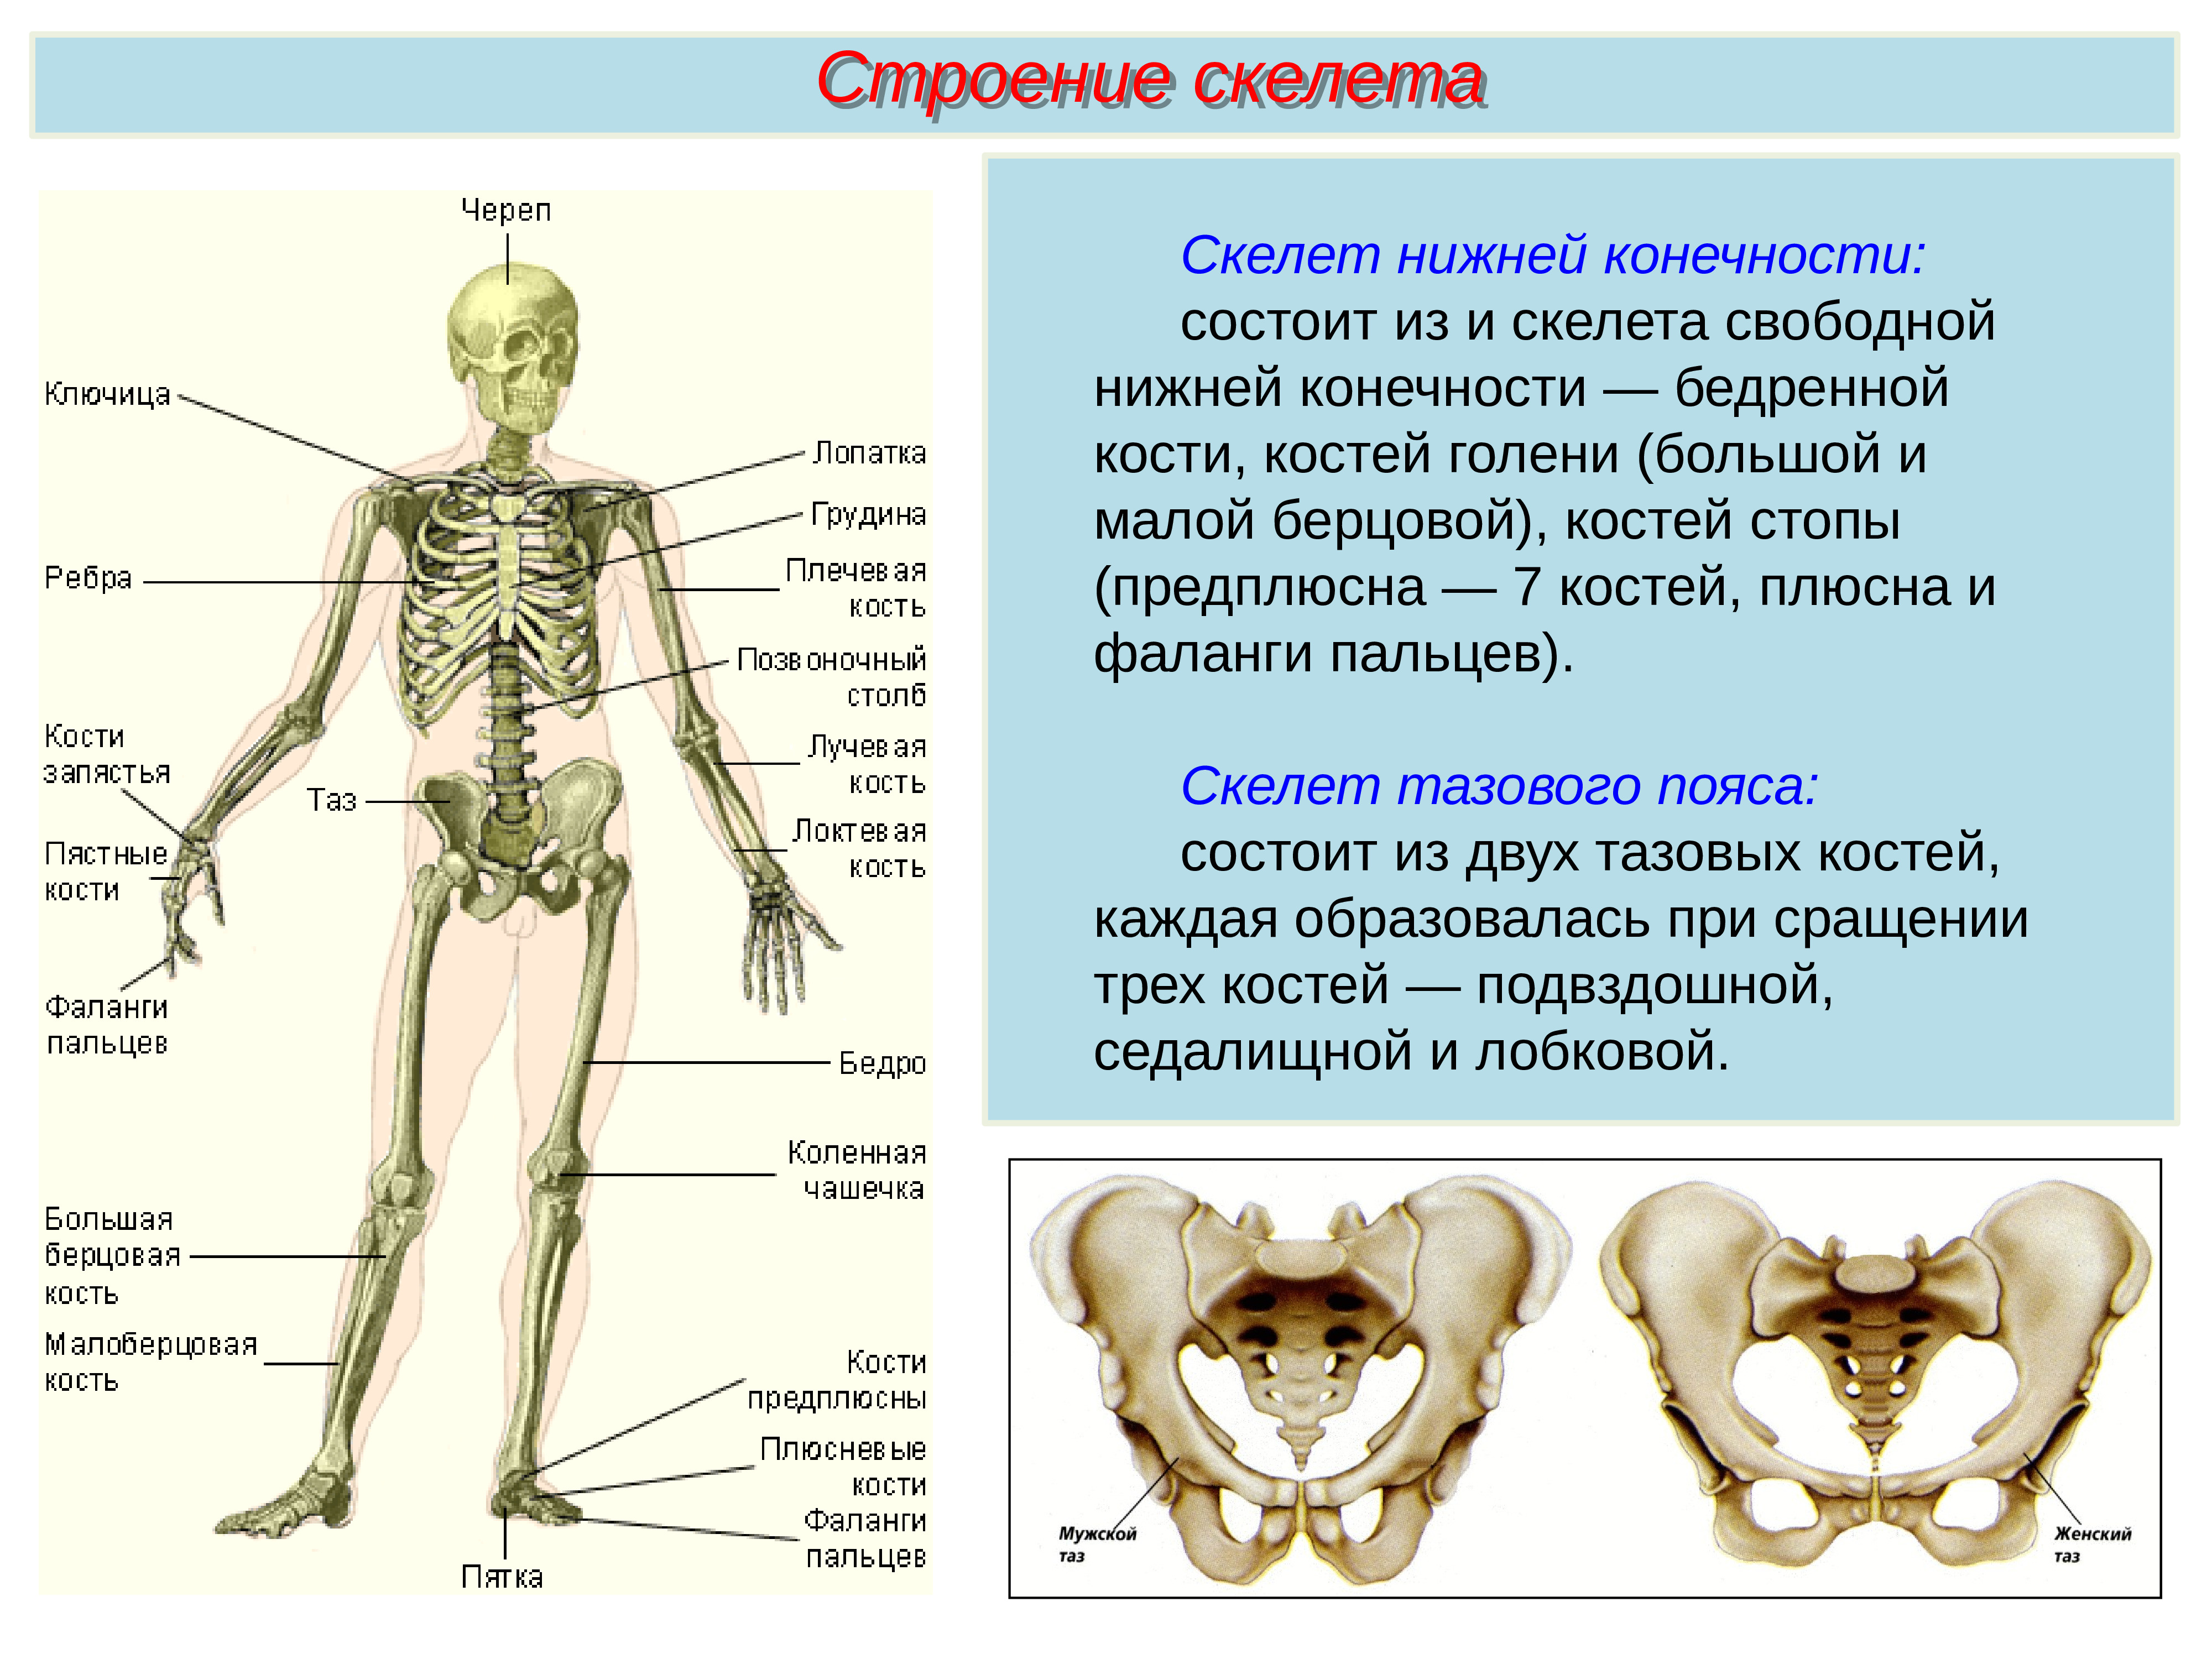 2 кости и их соединения. Скелет туловища человека с названием костей. Кости скелета биология 8 класс. Строение костей соединение костей. Скелет человека строение костей 8 класс биология.